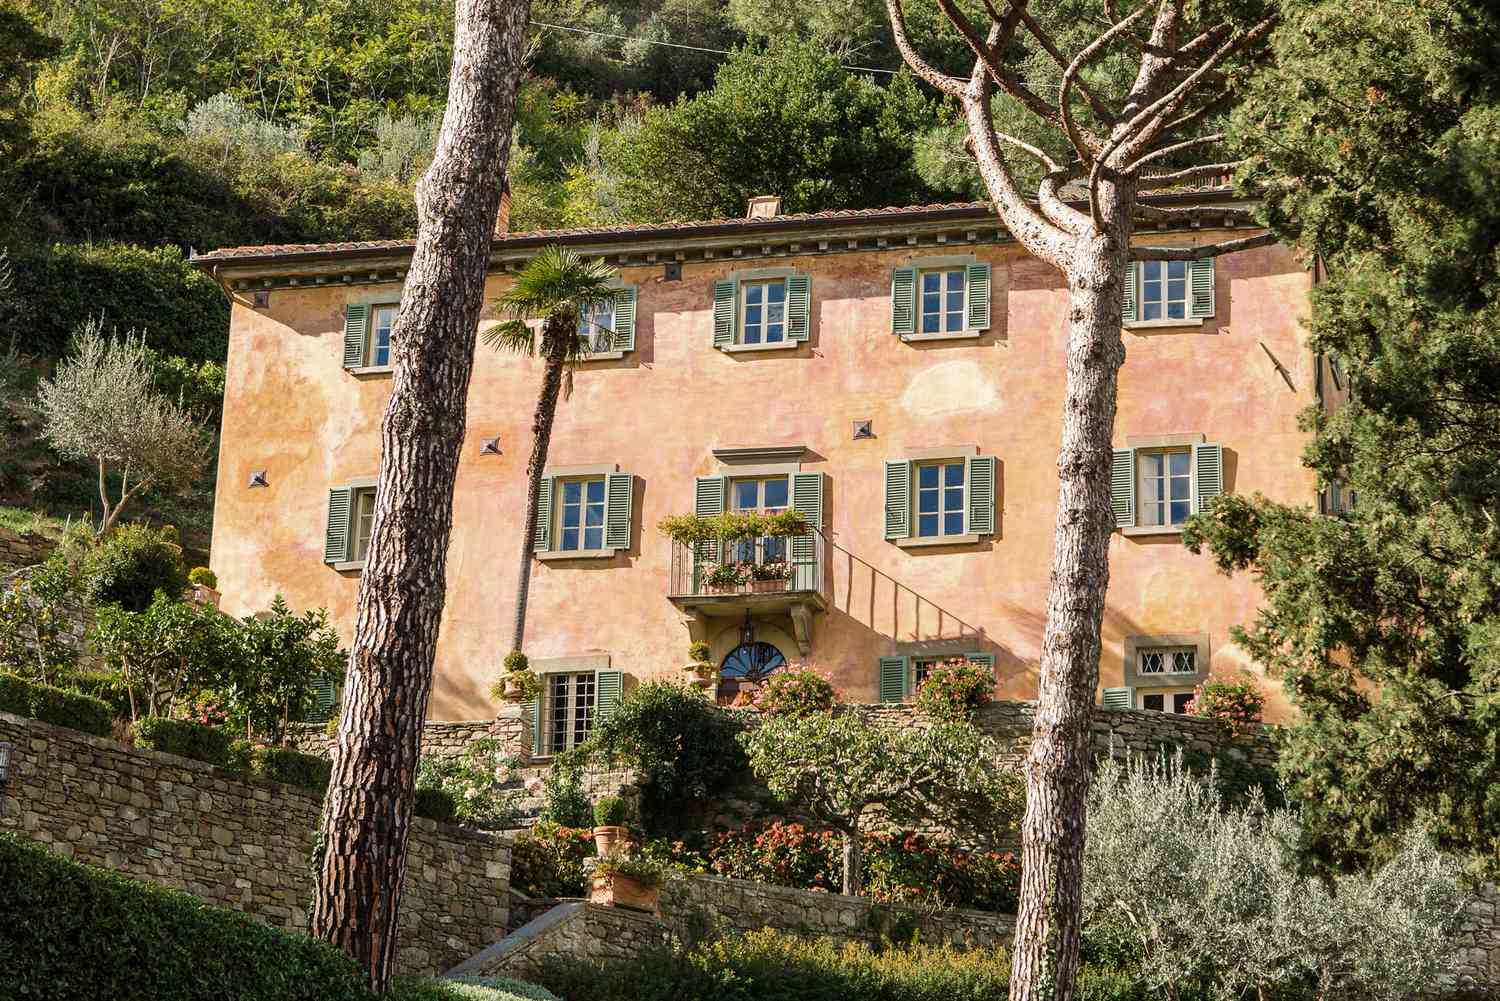 Maison de style campagne française avec des murs de couleur terre cuite entourés d'arbres et d'arbustes